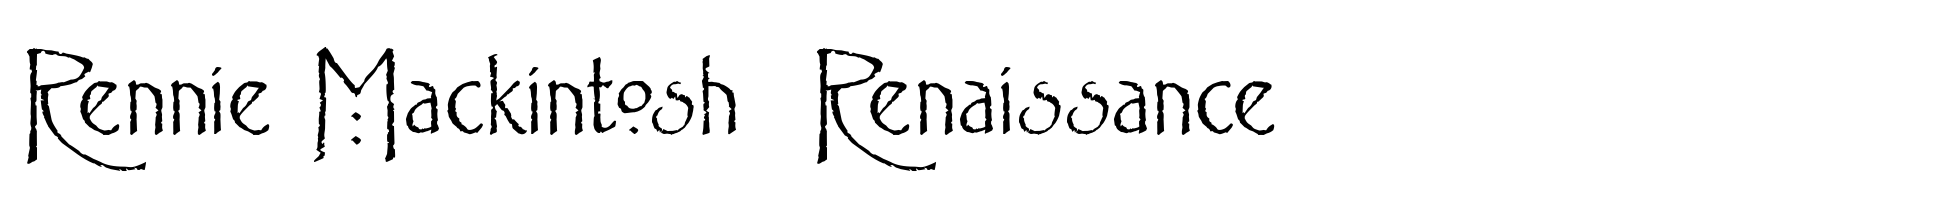 Rennie Mackintosh  Renaissance